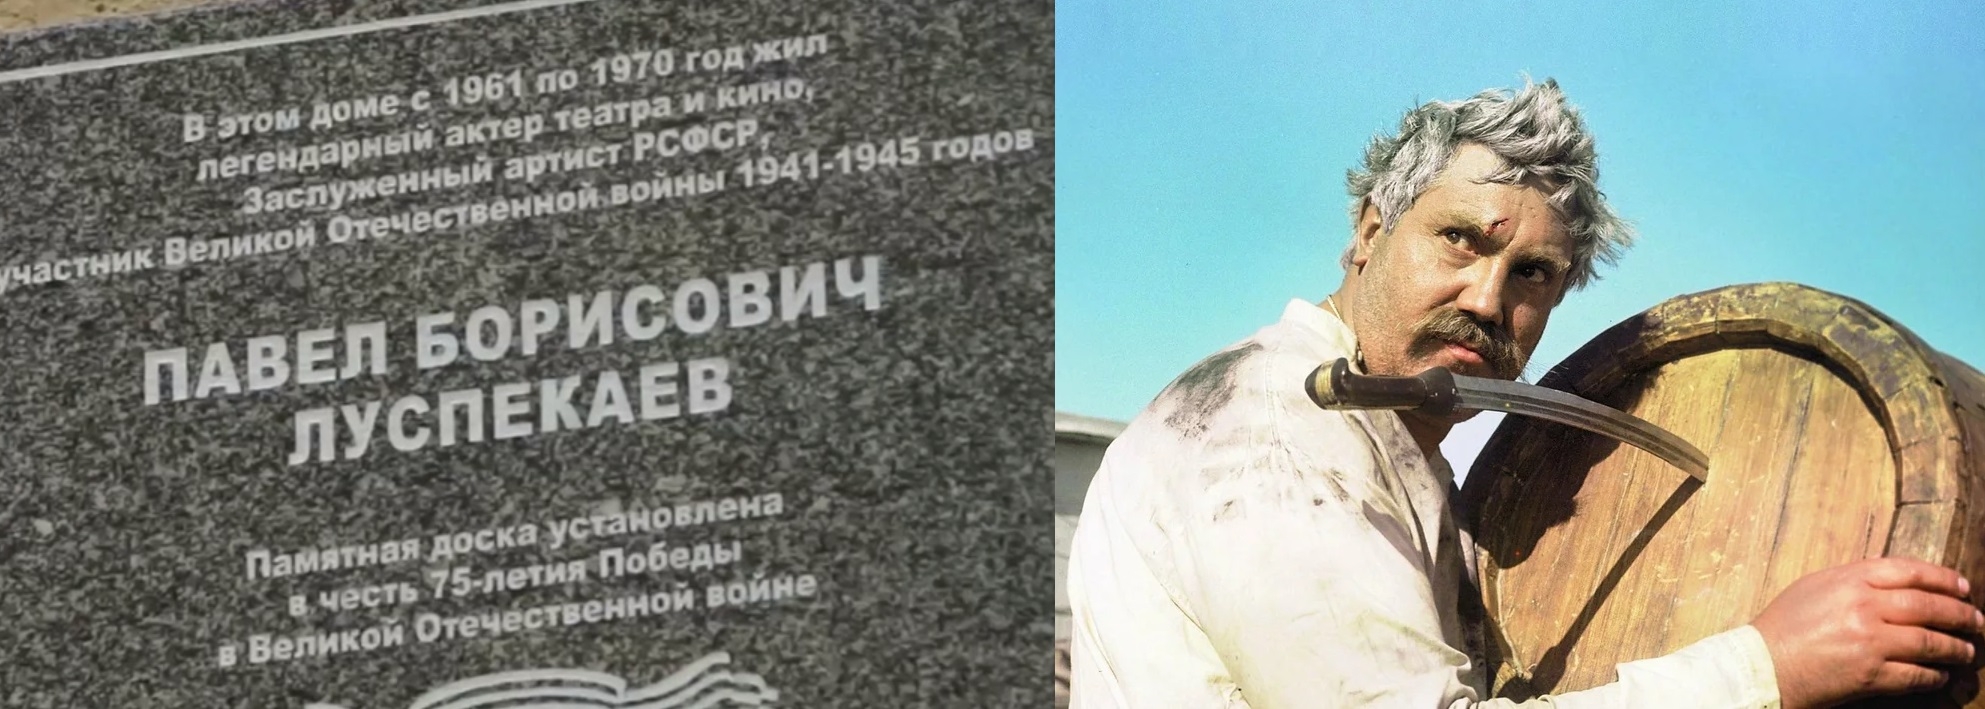 В Петербурге увековечили память об актере Павле Луспекаеве